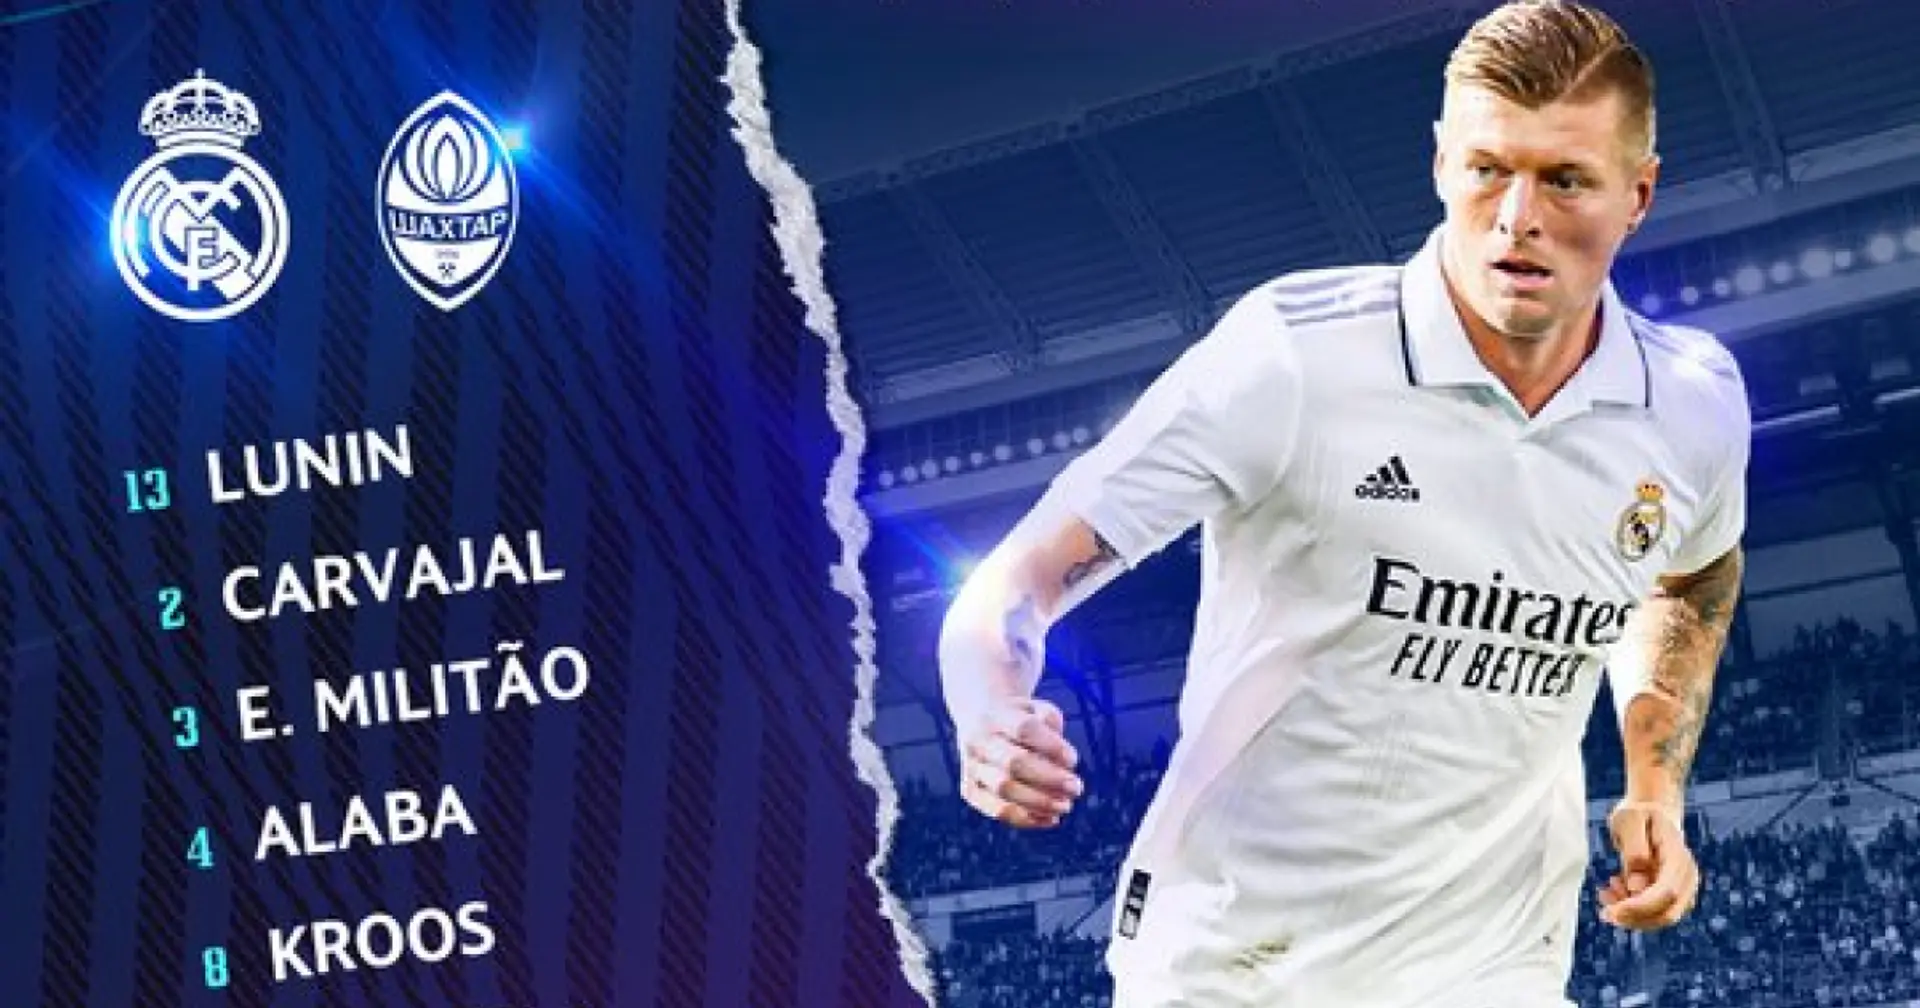 OFFICIEL : Le XI du Real Madrid vs Shakhtar